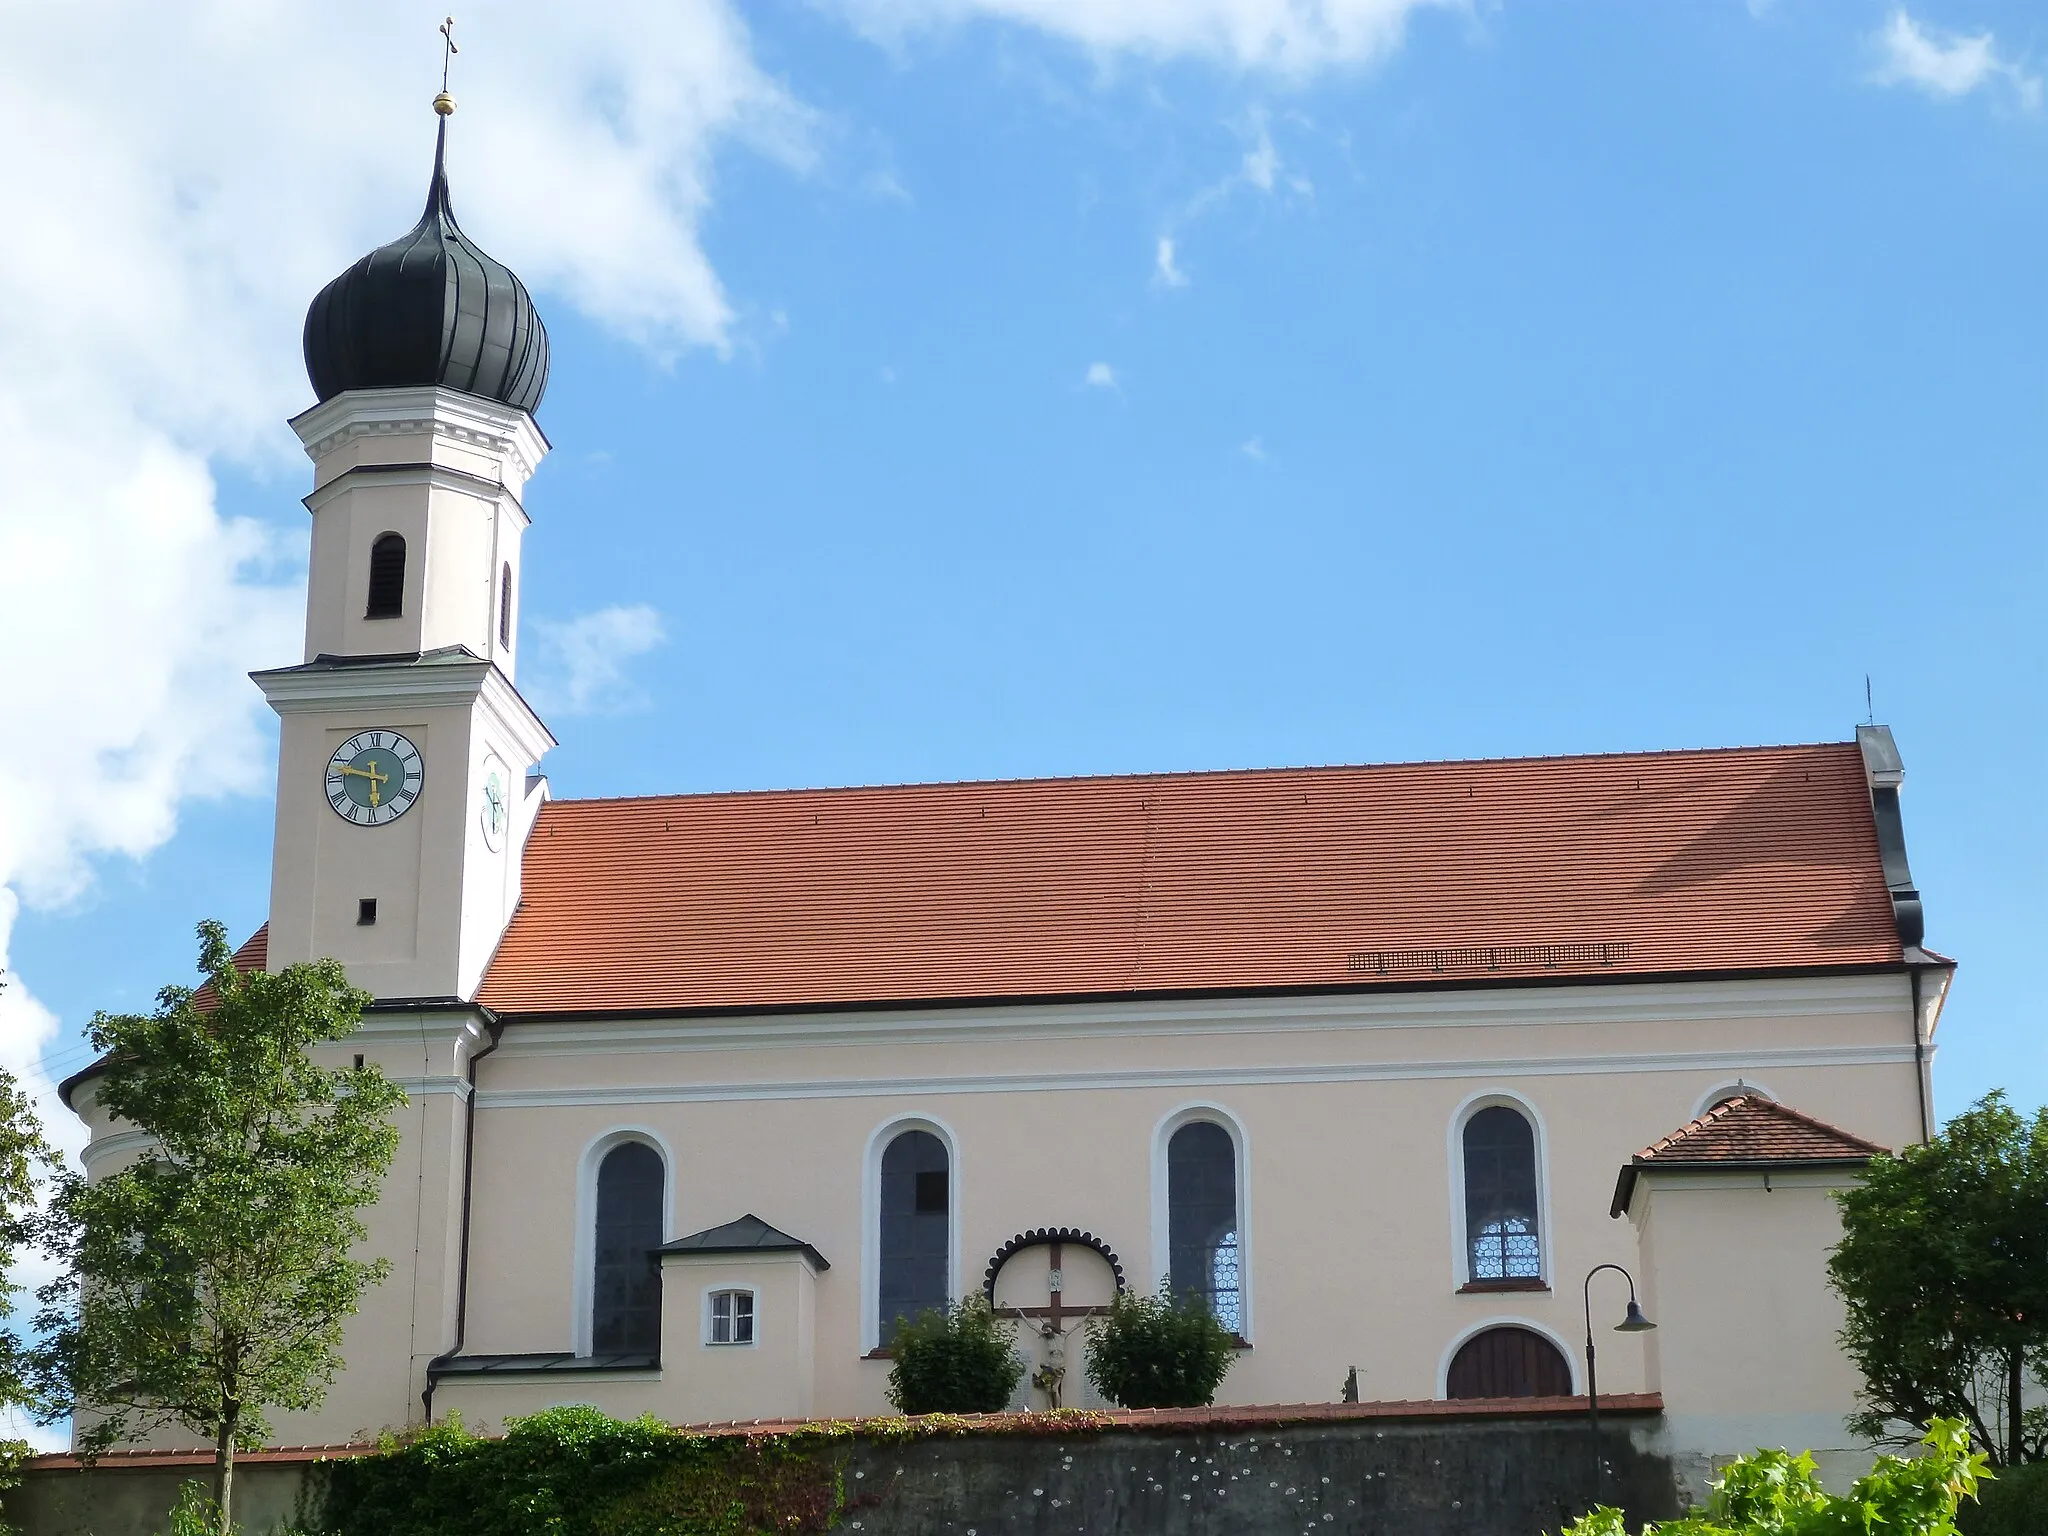 Photo showing: Church in Allmannshofen, Bavaria